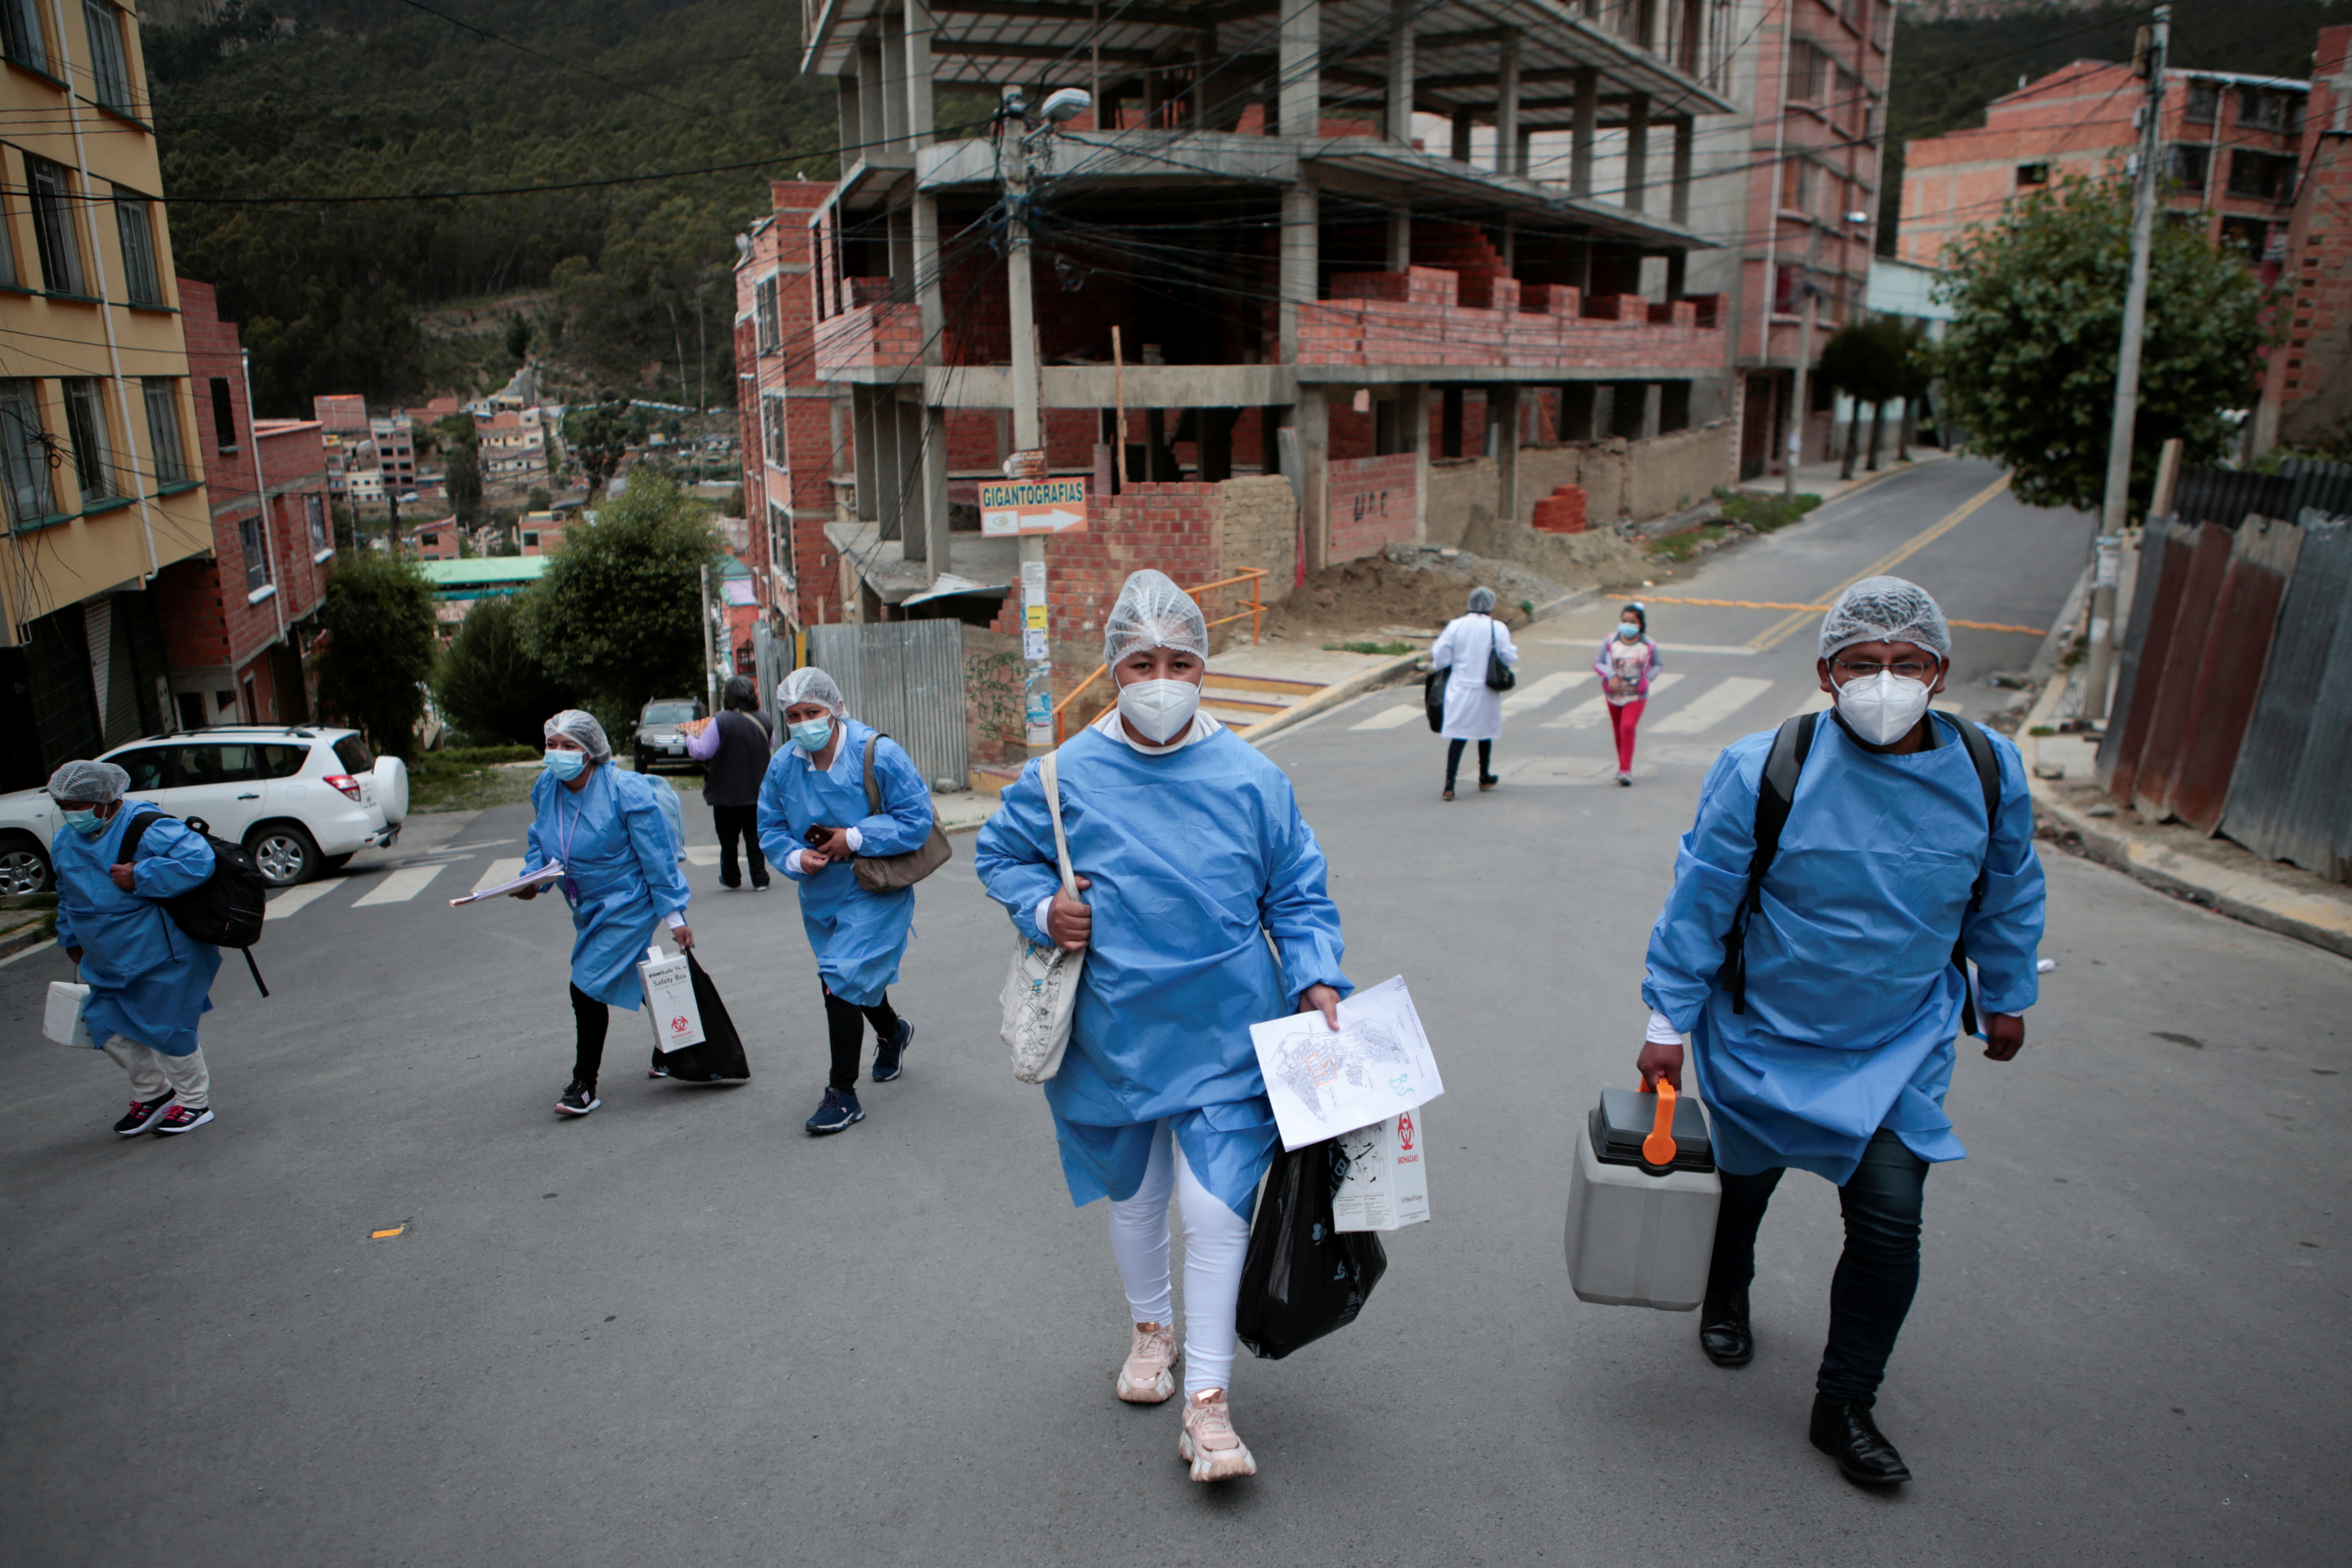 Trabajadores de la salud caminan en la calle durante una recorrida puerta a puerta para vacunar a los residentes contra el COVID-19 en La Paz, Bolivia (REUTERS/Manuel Claure)